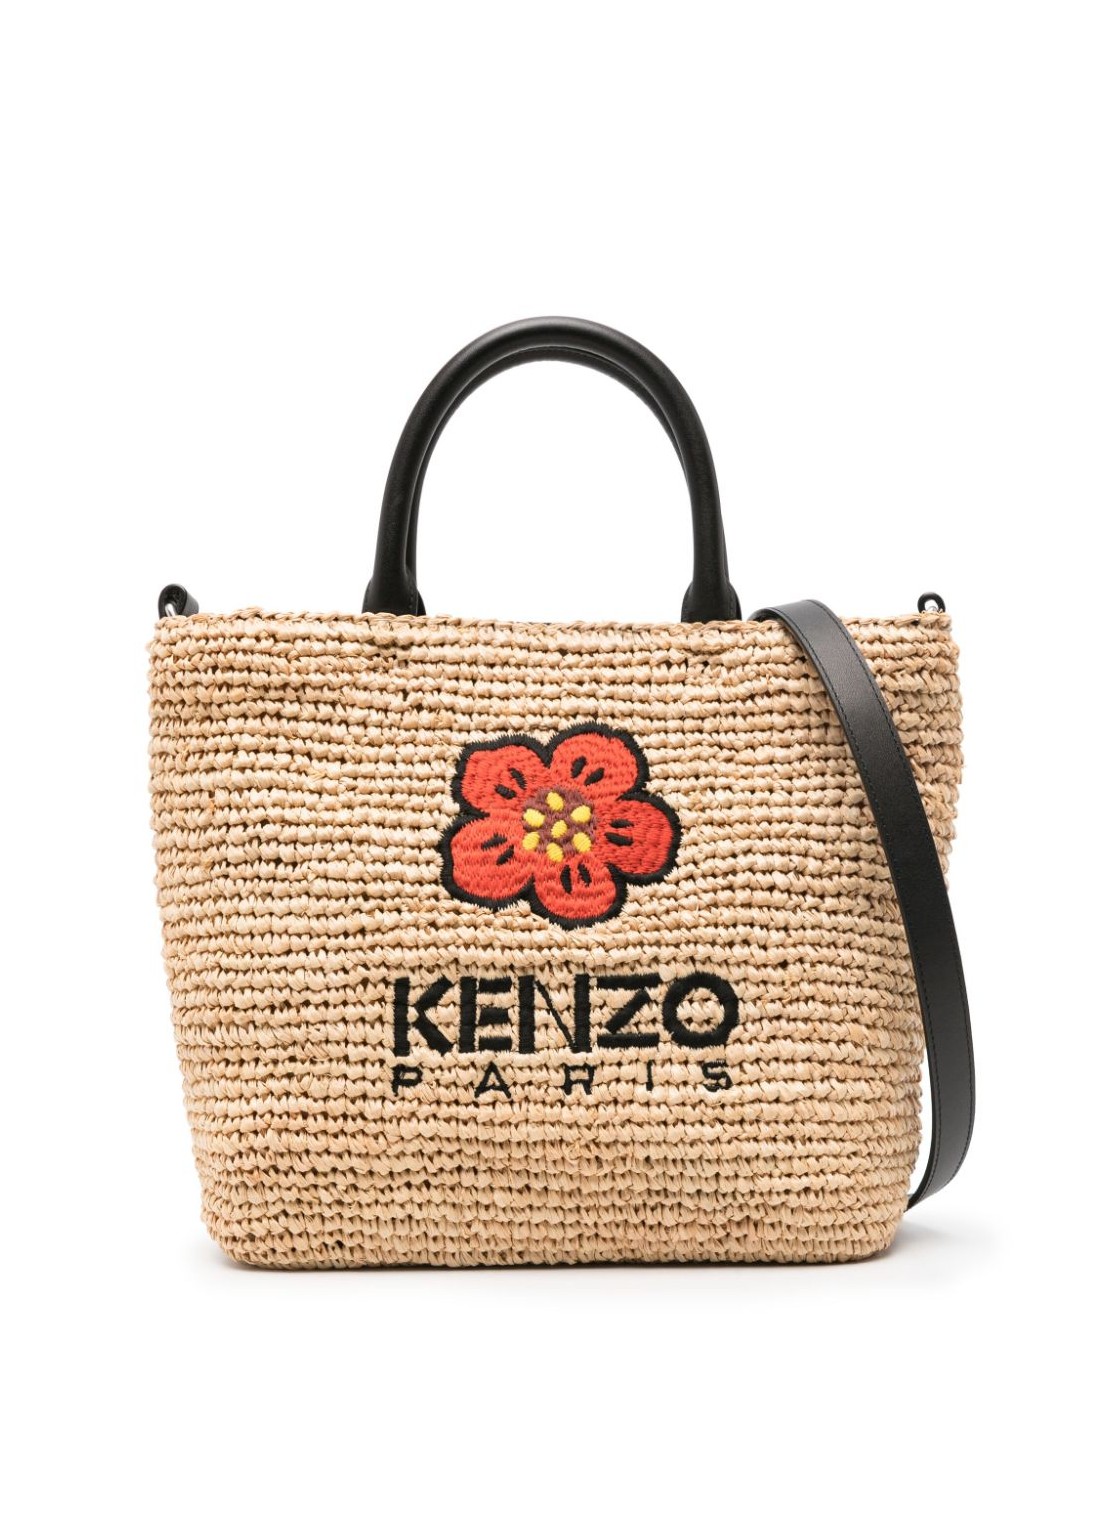 Handbag kenzo handbag woman sac shopping / tote fe52sa560f02 99 talla T/U
 